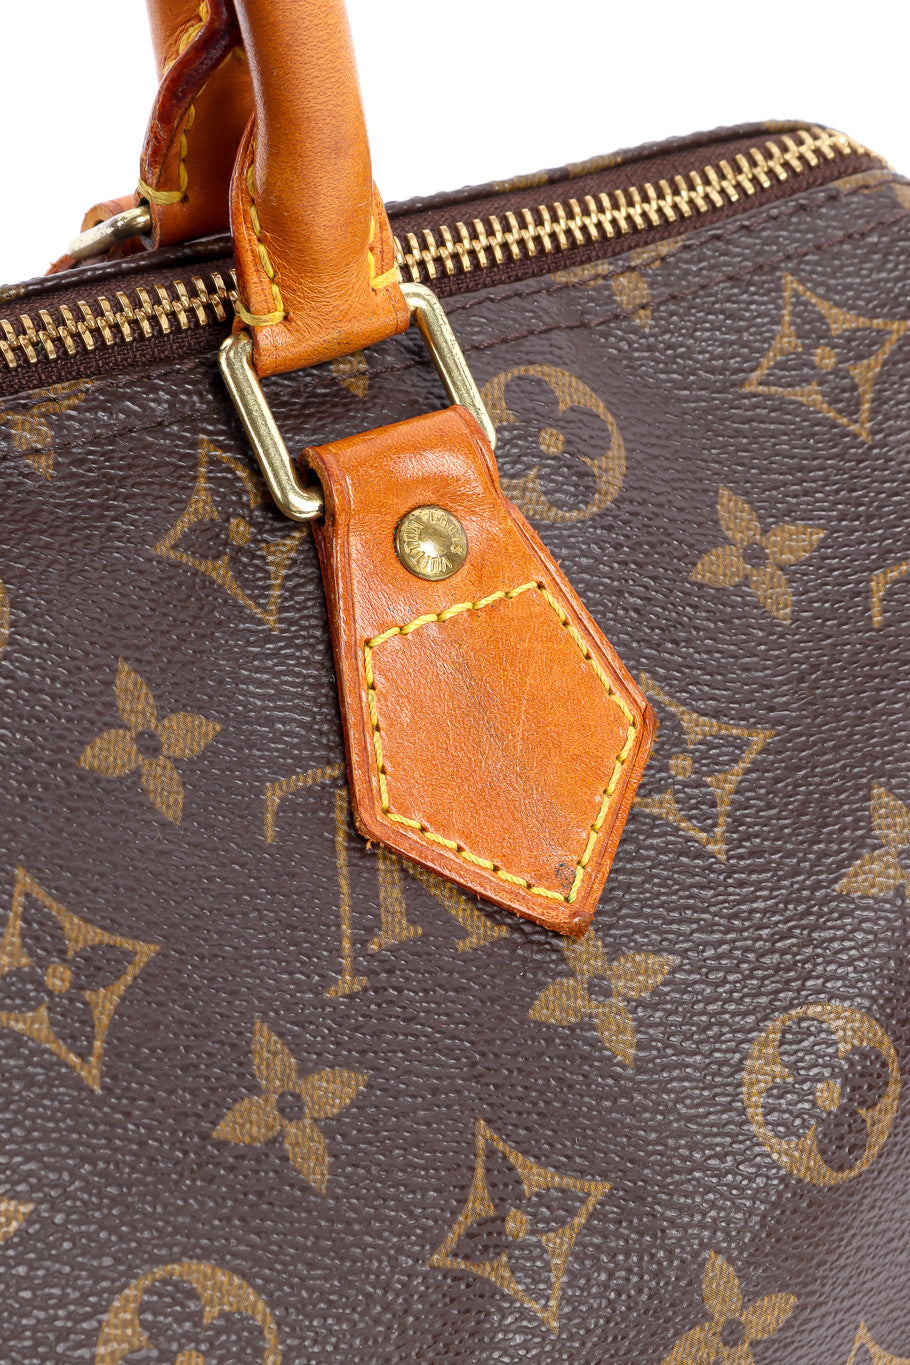 Louis Vuitton classic monogram speedy 30 bag leather details @recessla